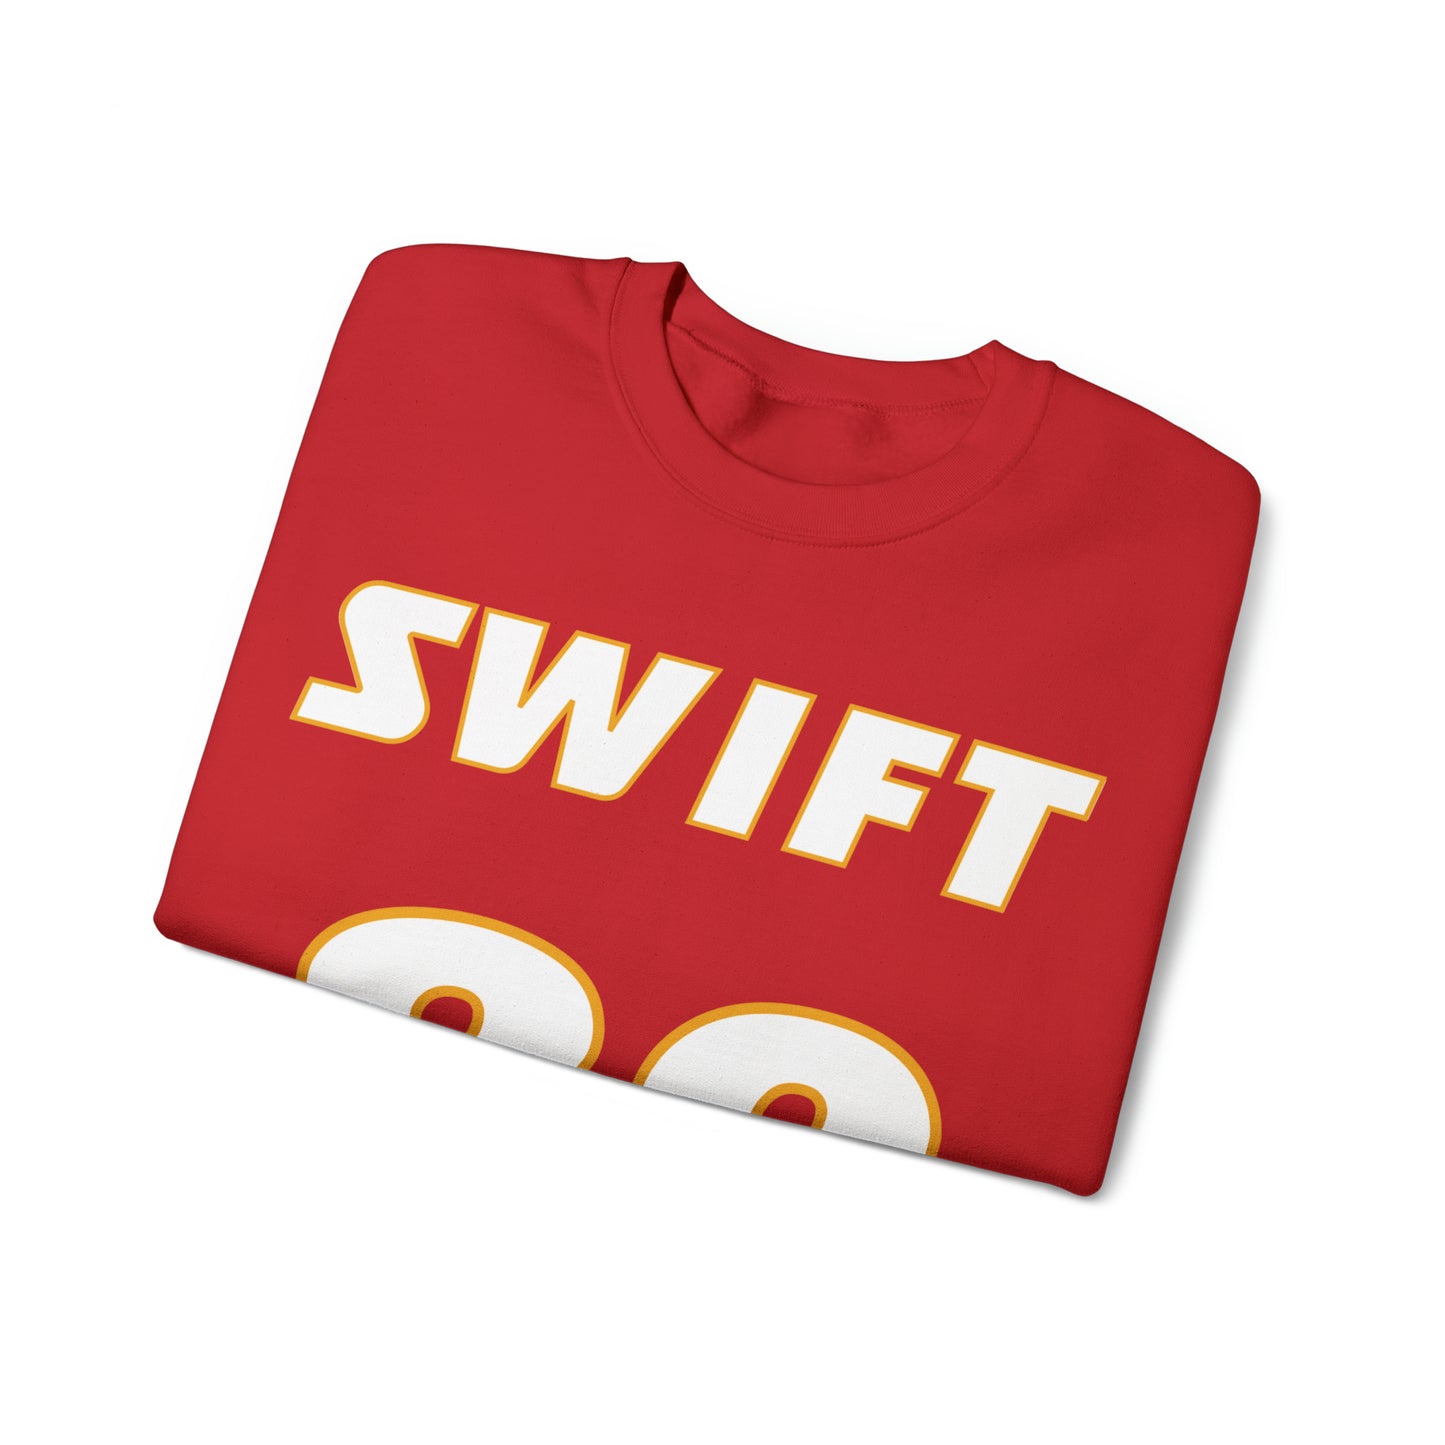 SWIFT 89 Crewneck Sweatshirt